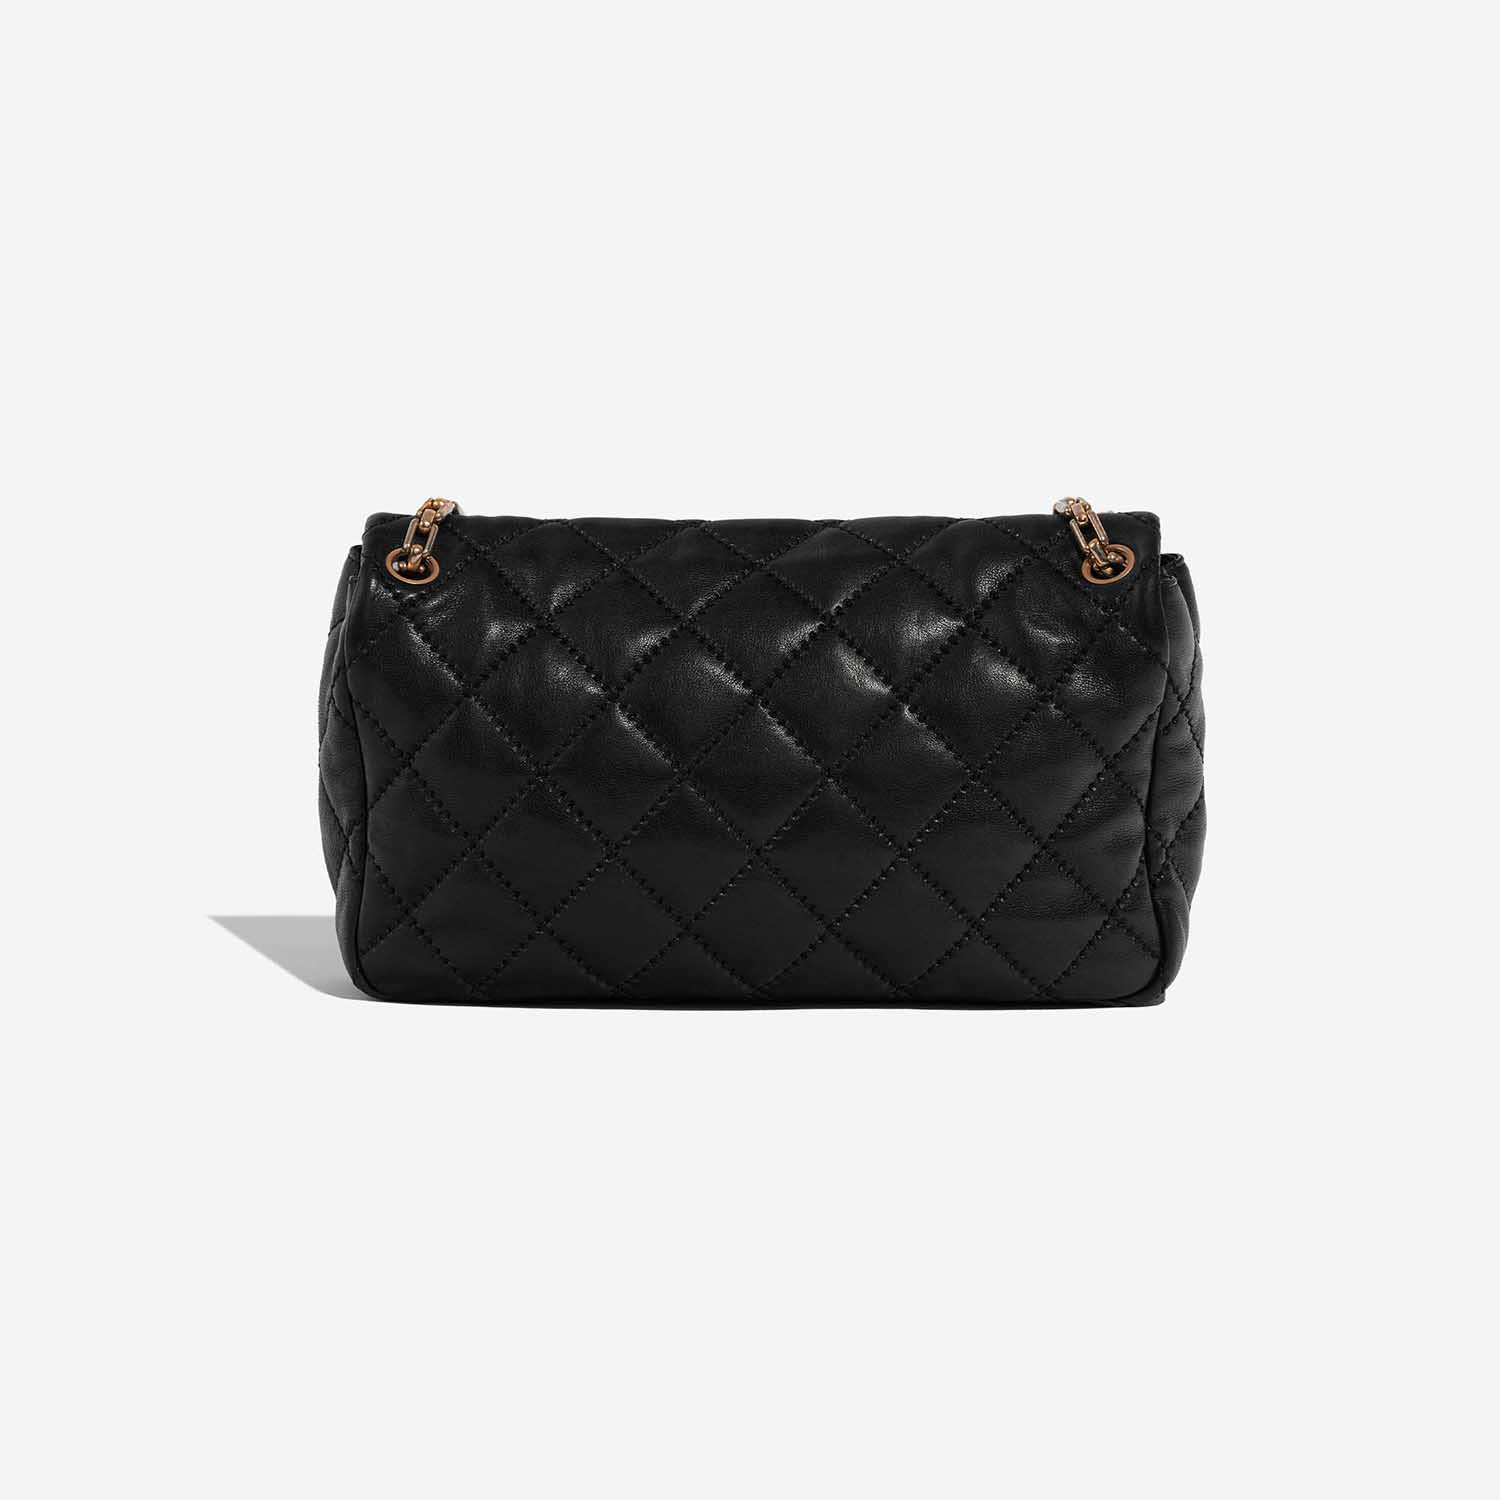 Chanel Timeless Jumbo Black Back | Verkaufen Sie Ihre Designer-Tasche auf Saclab.com